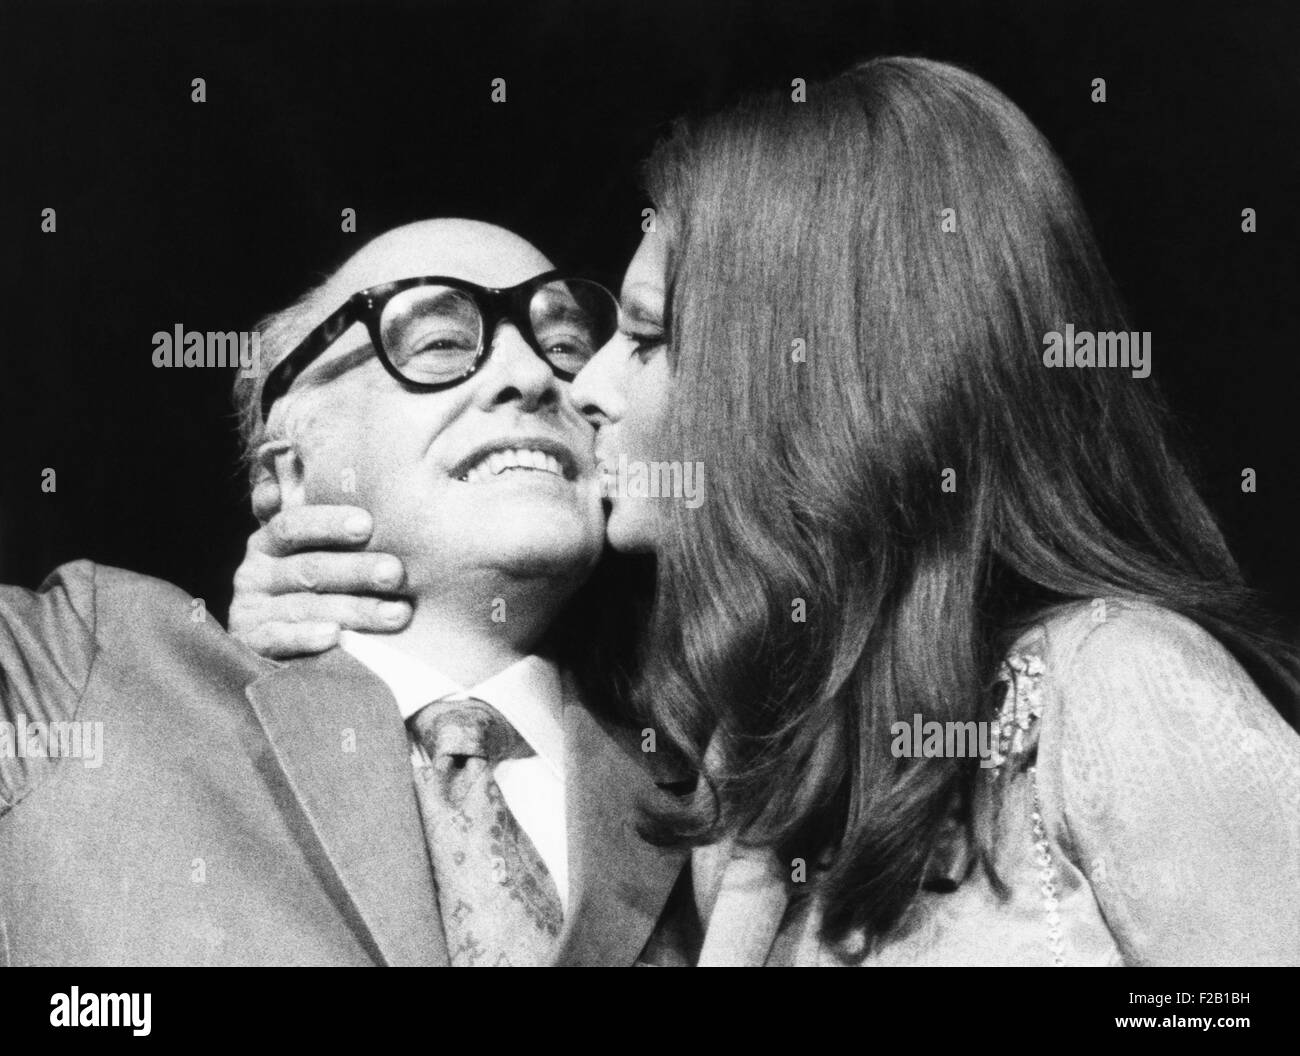 Sophia Loren gibt ihr Ehemann, Filmproduzent Carlo Ponti, einen Kuss auf Pressekonferenz. Sie waren in New York, Sophia Loren Film Sonnenblume, 24. September 1970 zu fördern. (CSU 2015 8 613) Stockfoto